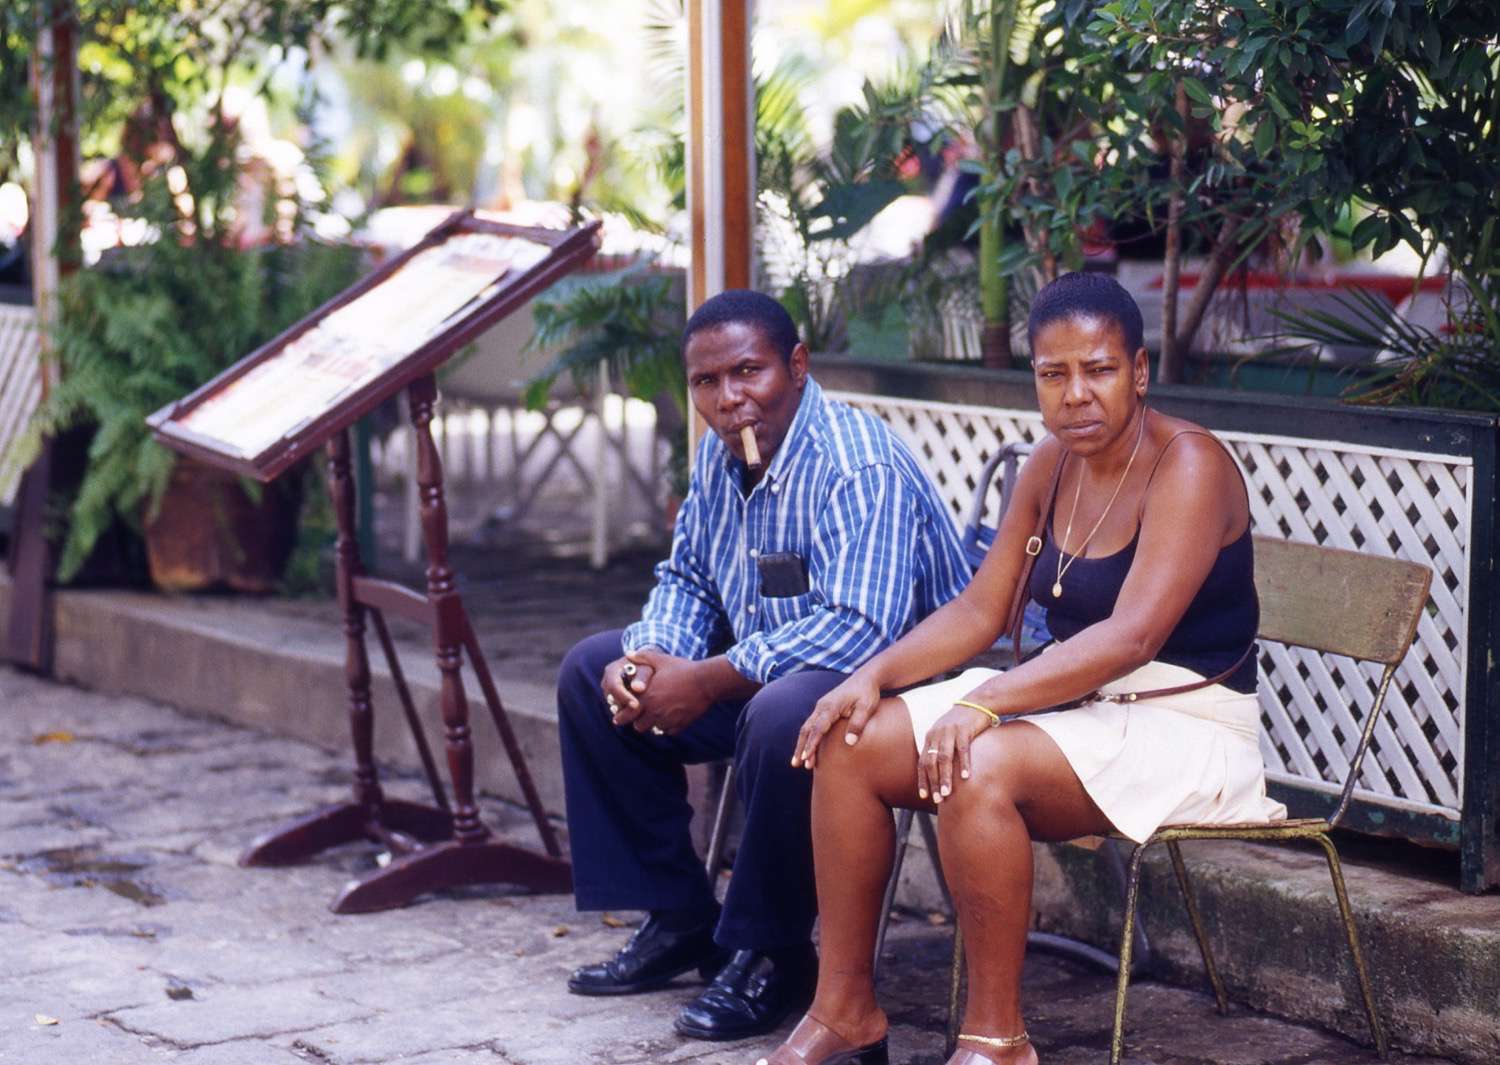 Cuba_man-cigar-with-woman-Cuba093.jpg